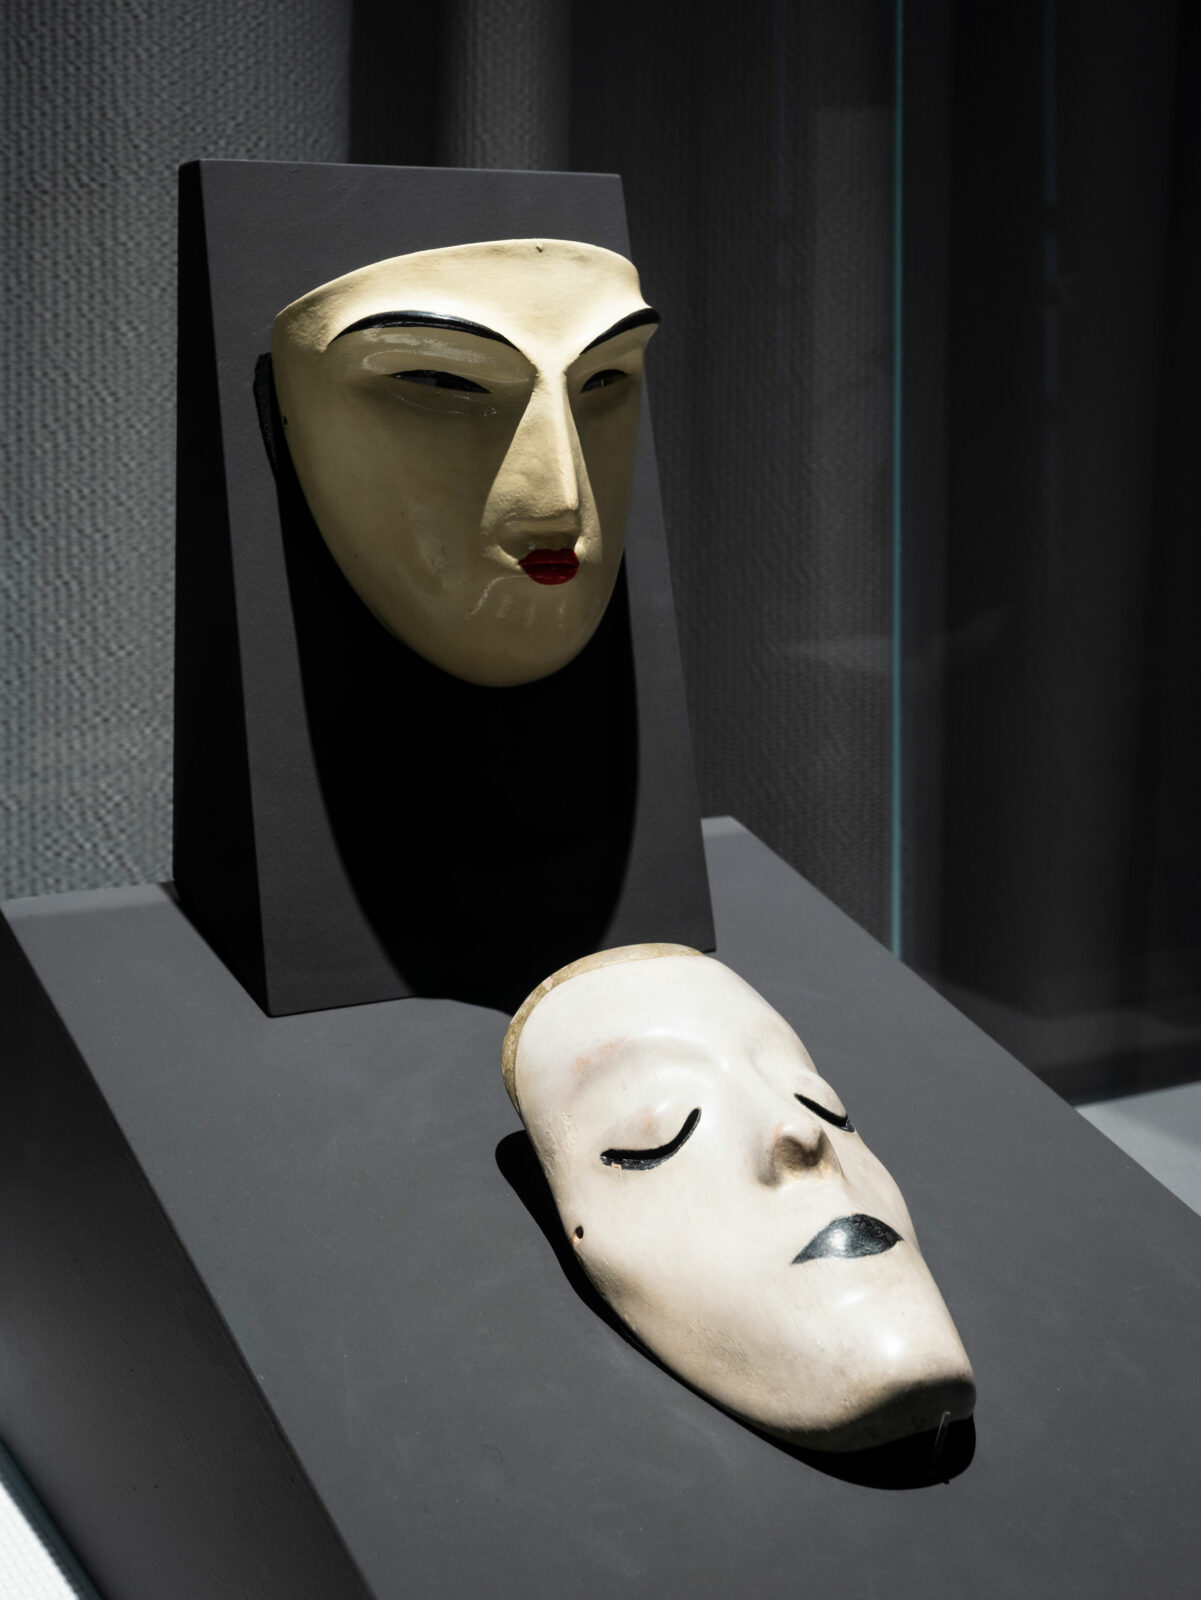 Zwei weiße Masken imit stark gezeichneten Konturen um Augen und Mund in einer Vitrine – die eine hängt, die andere liegt.